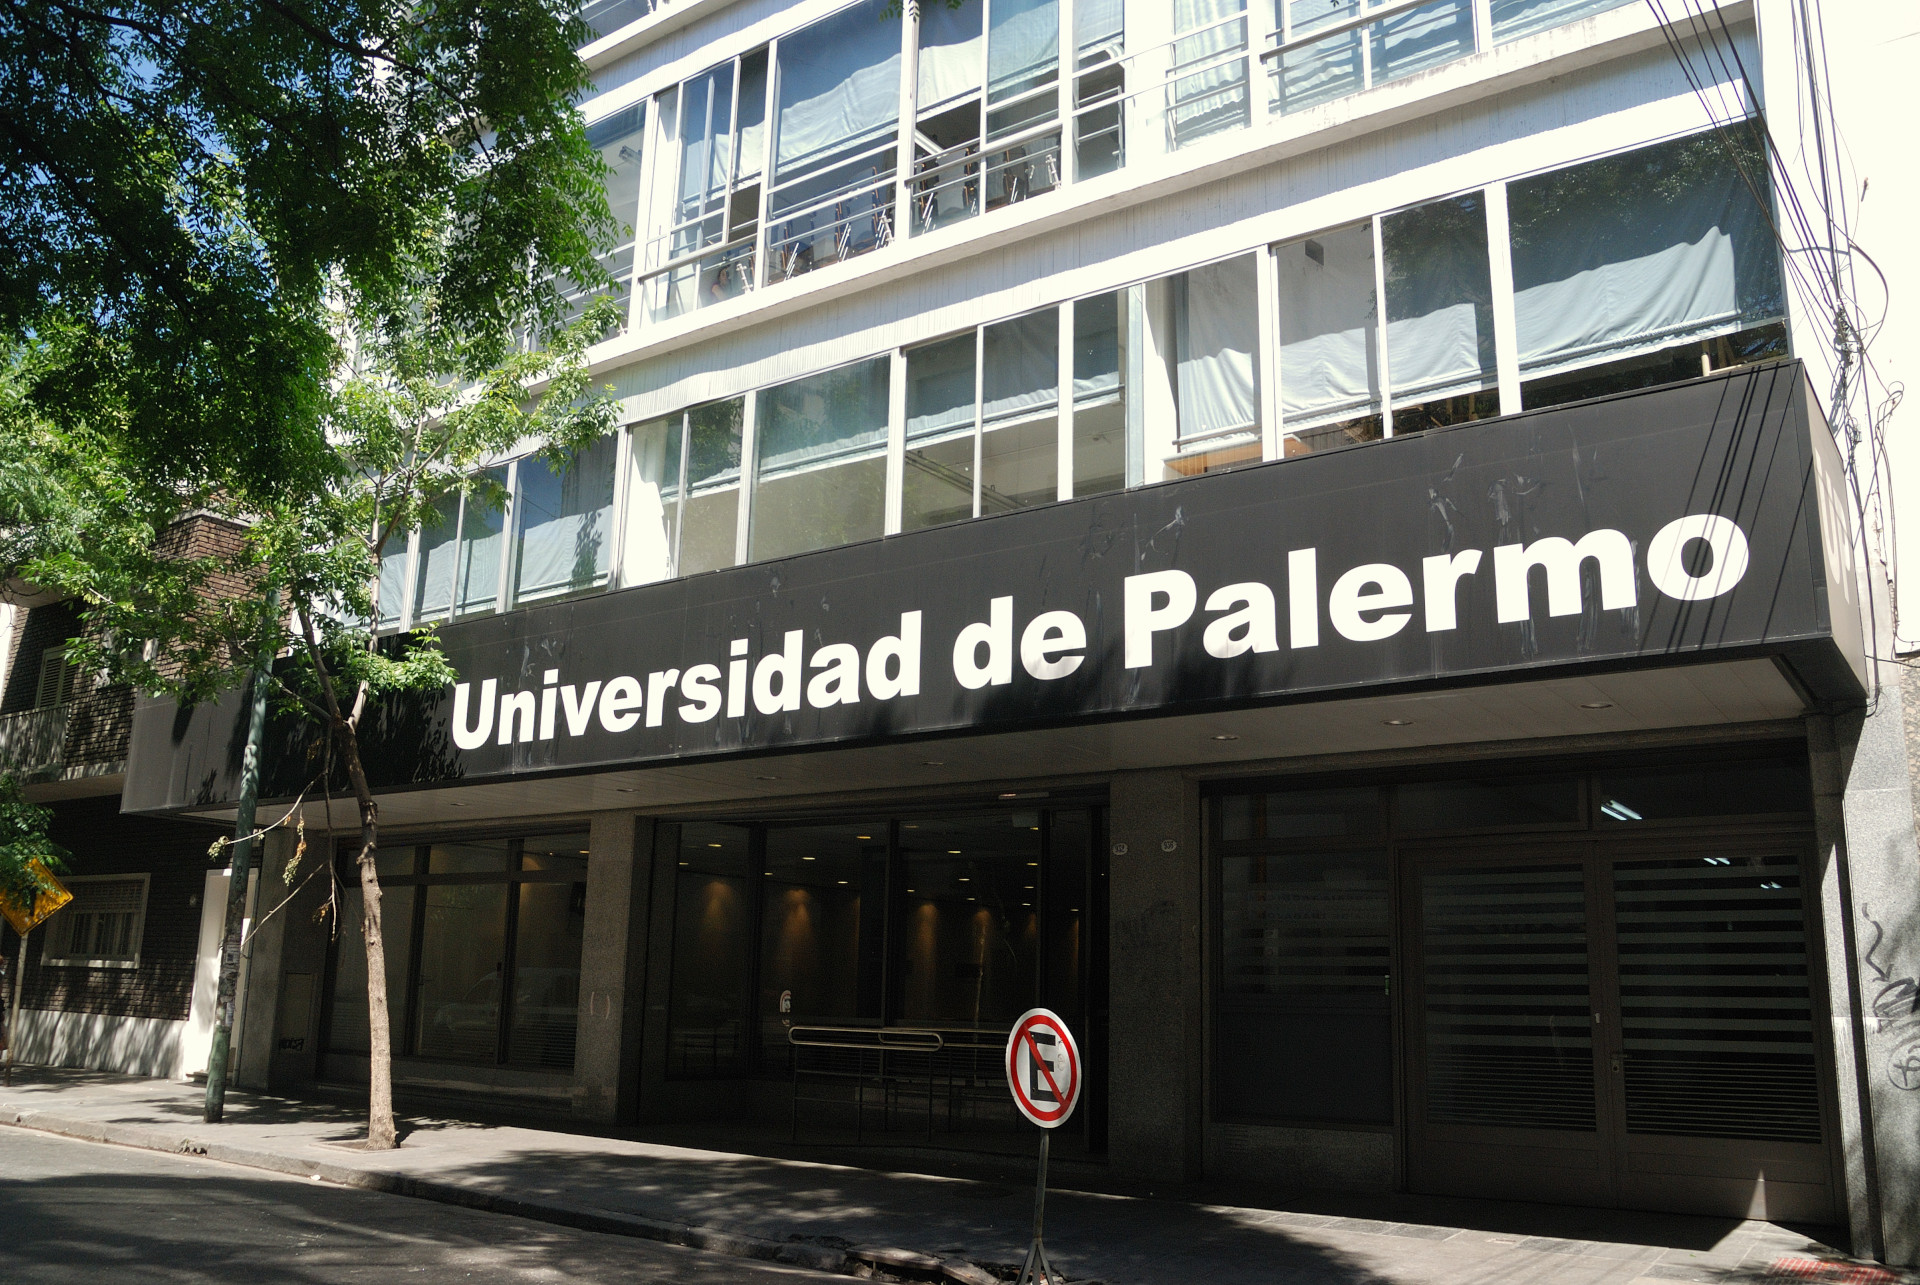 Fachada de la Universidad de Palermo, Argentina